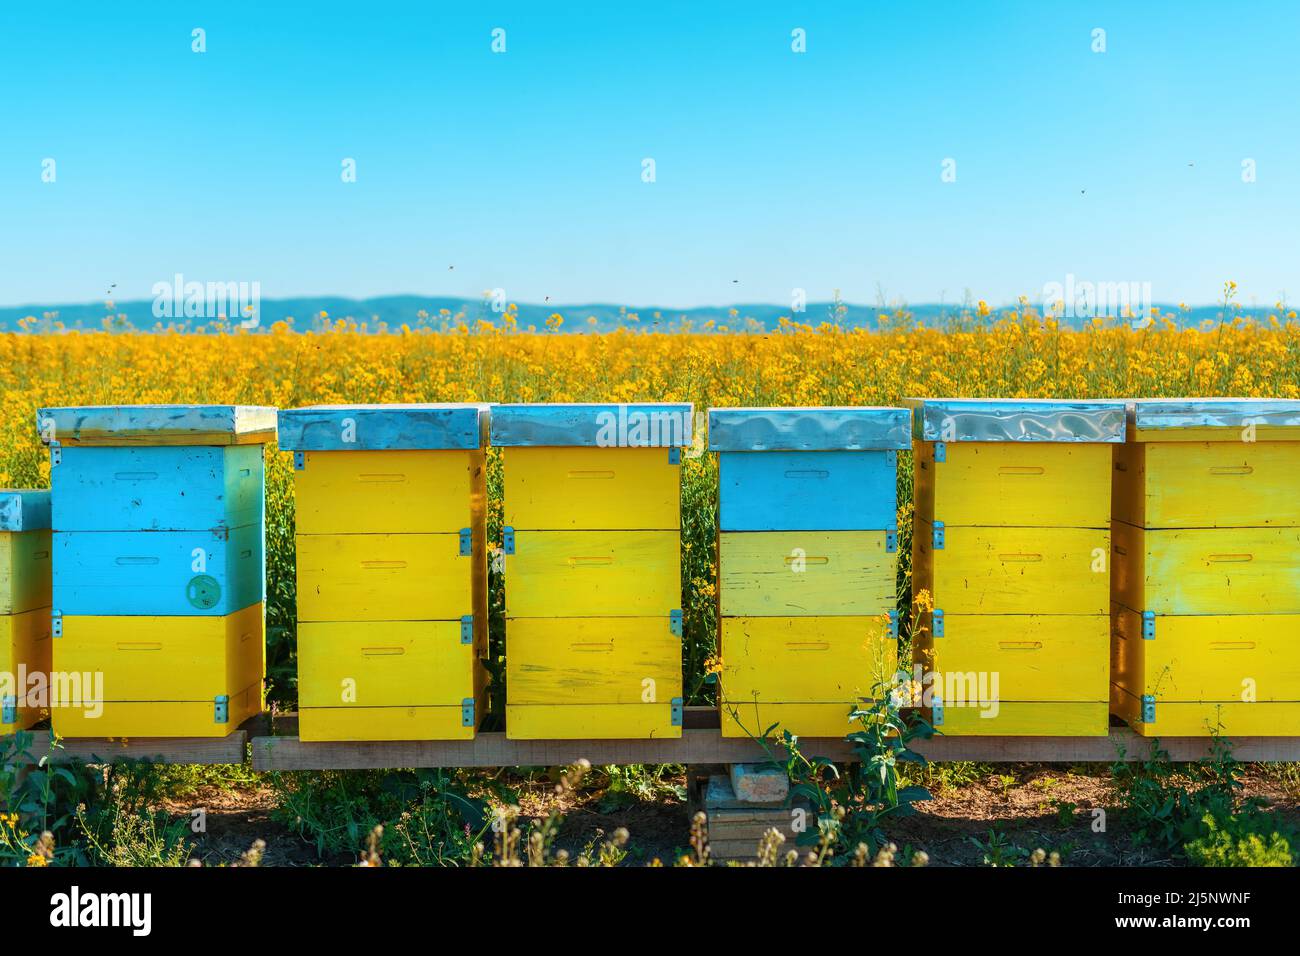 Cajas de Beehive en floreciente campo de colza, abejas de miel que realizan polinización en plantación de canola, enfoque selectivo Foto de stock